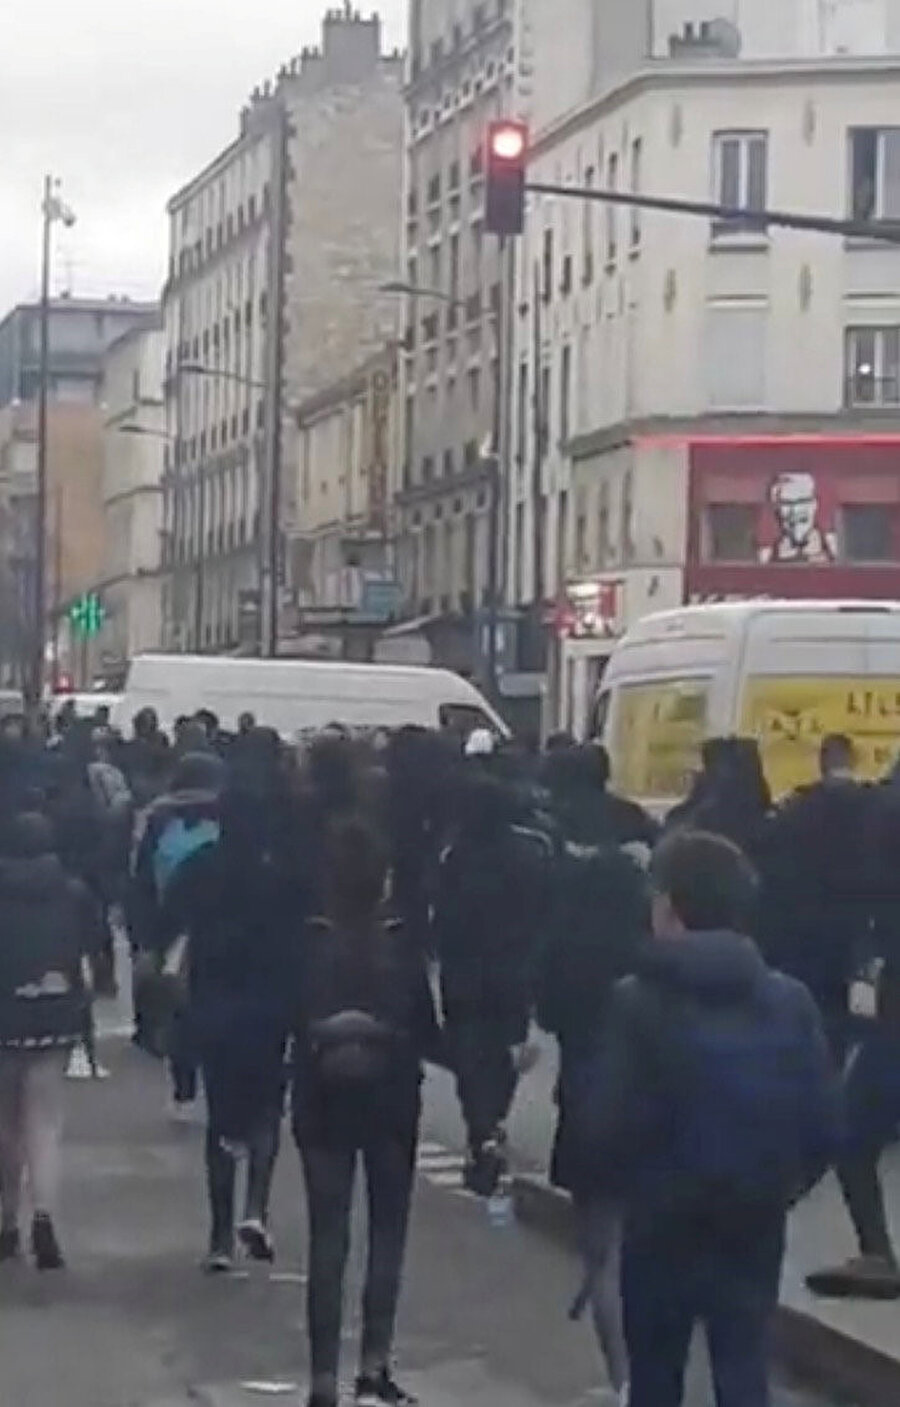 Paris'in Aubervillers banliyösündeki bir lisede öğrenciler ile polis arasında gergin anlar yaşandı. Bir araç ve birçok çöp bidonu ateşe verildi. Dijon kentinde de binlerce öğrencinin katıldığı bir eylem düzenlendi.